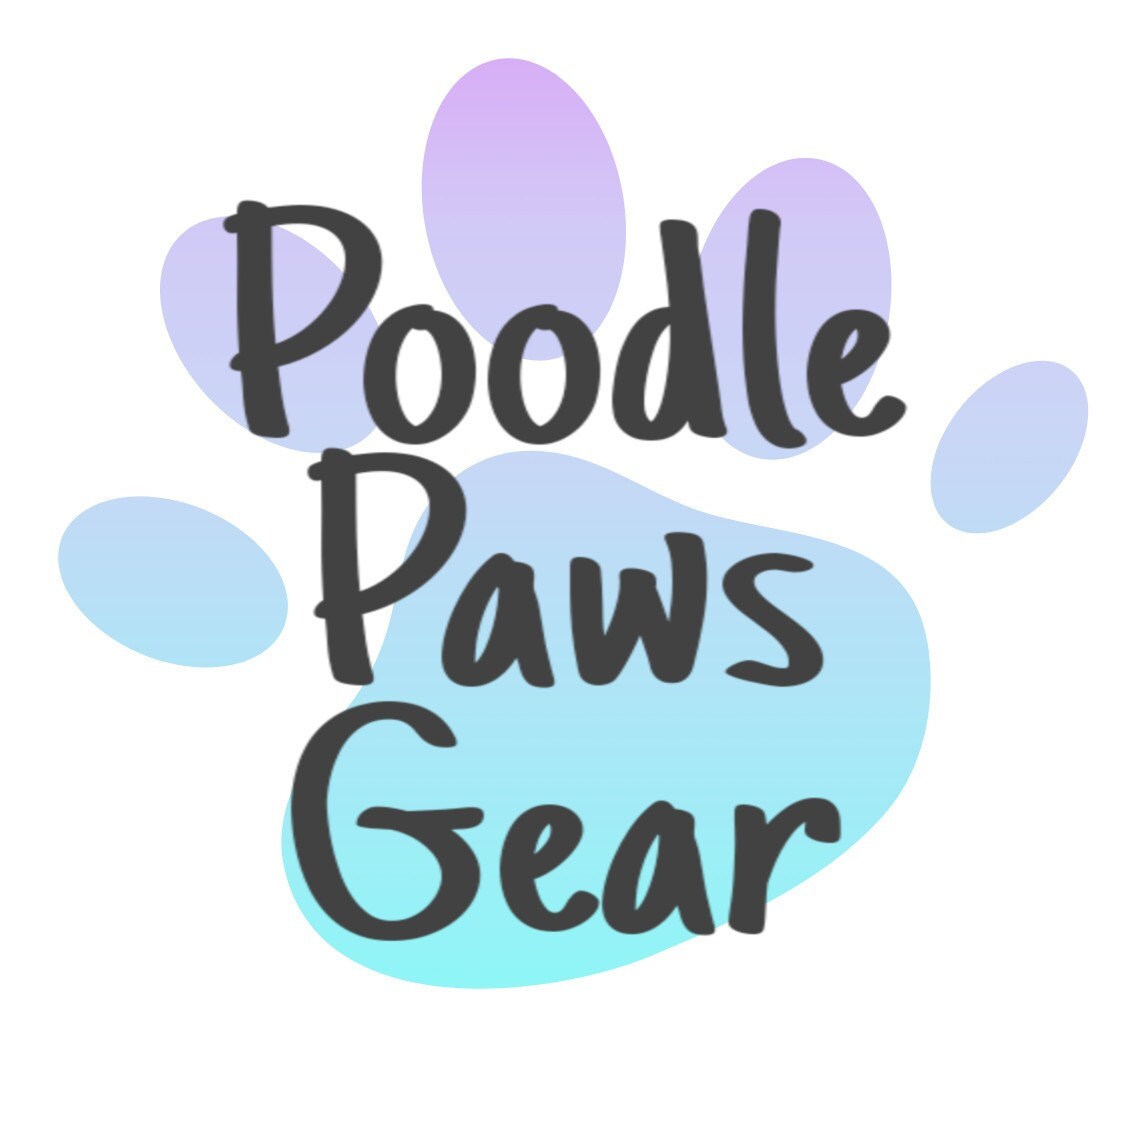 poodle paws gear